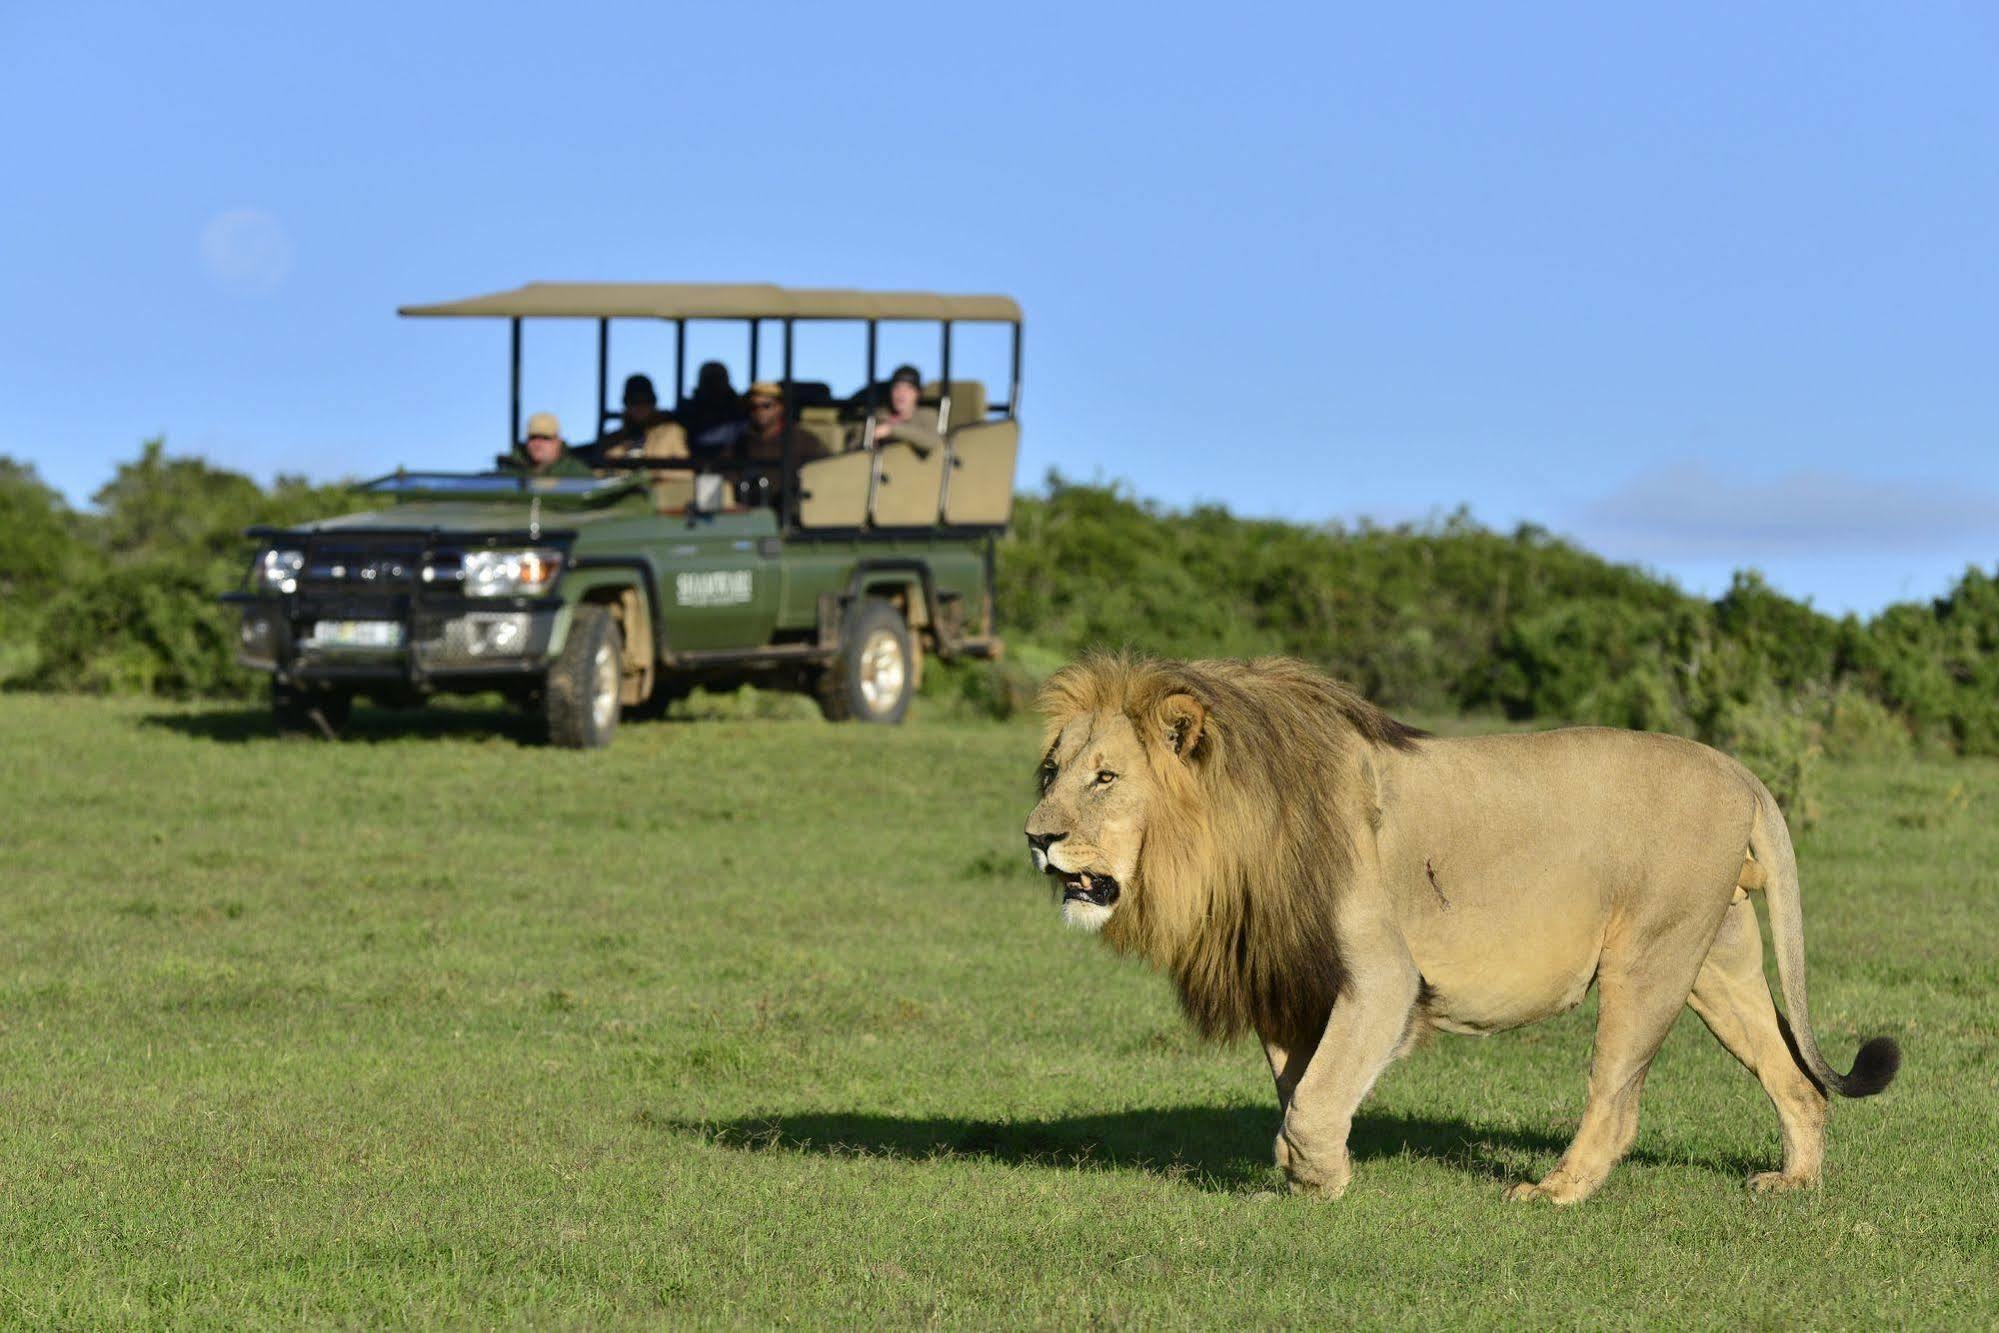 Shamwari Game Reserve Port Elizabeth Bagian luar foto